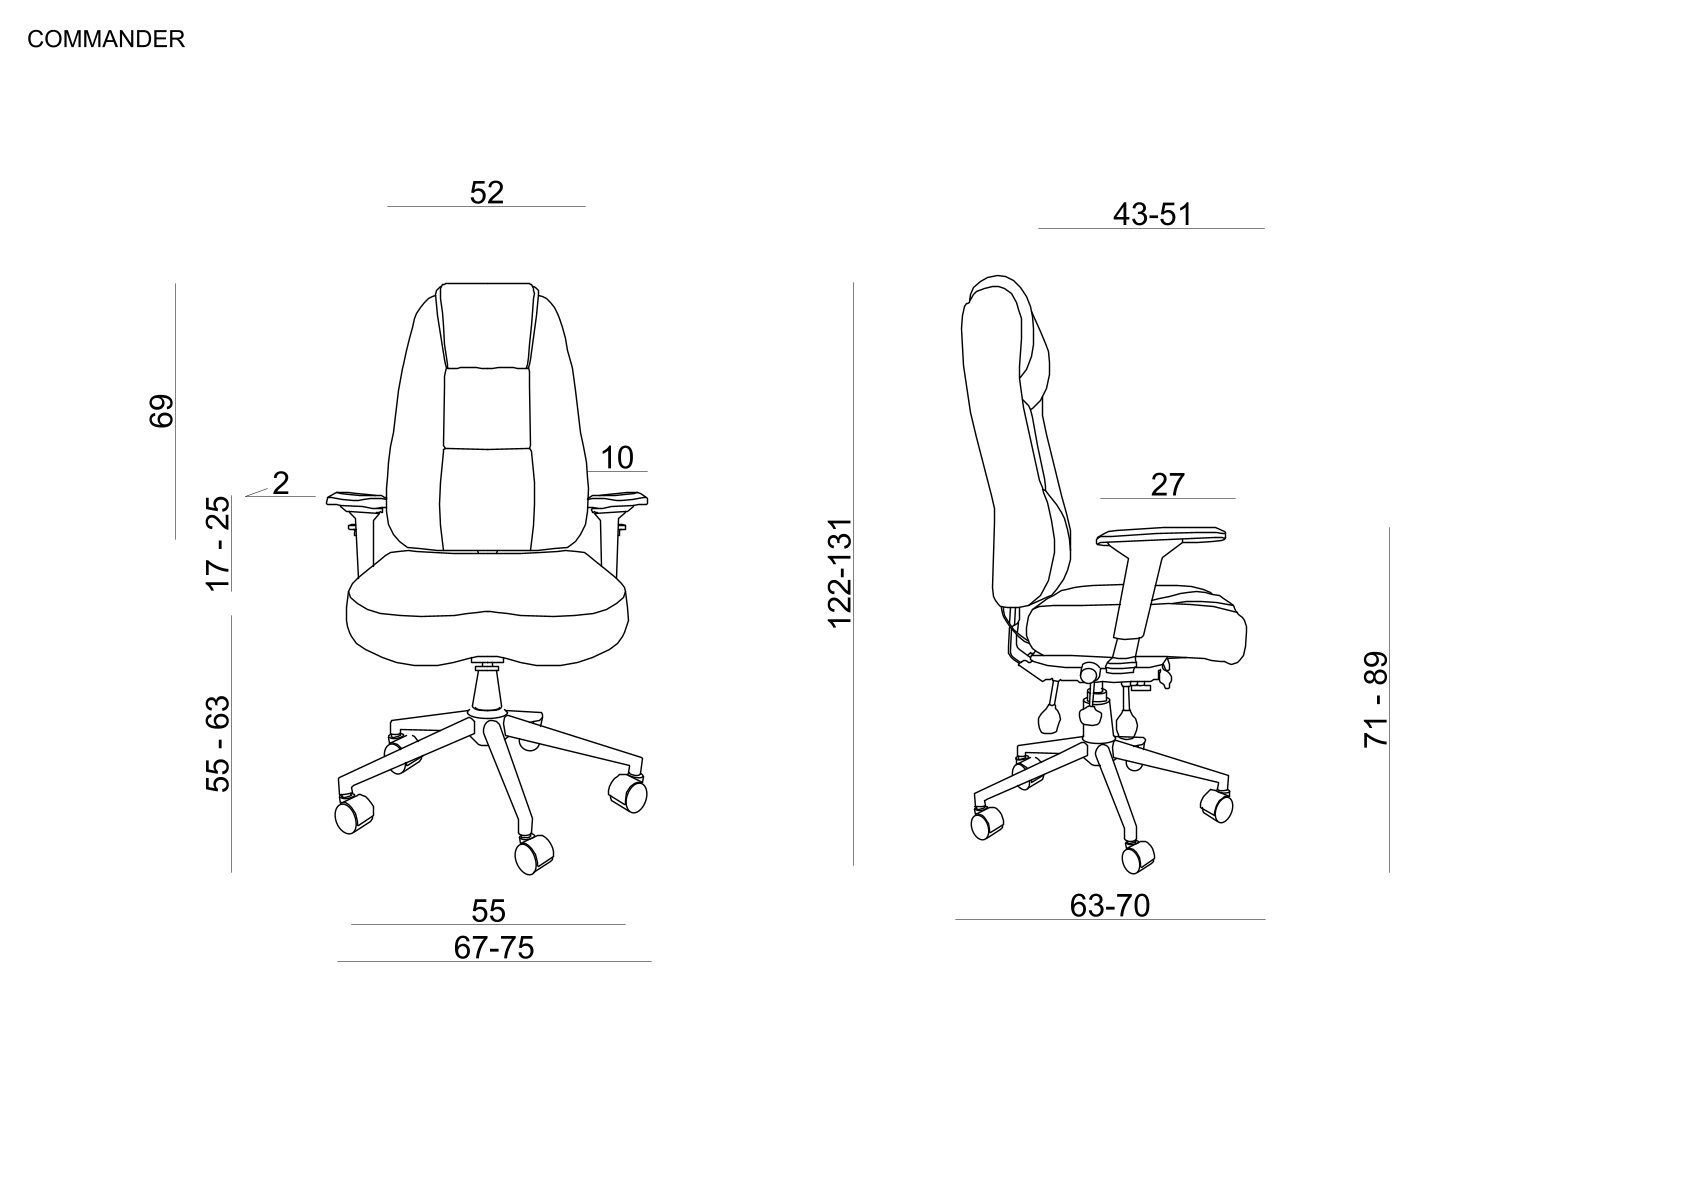 Scaun ergonomic de birou - confort, sănătate și eficiență în muncă